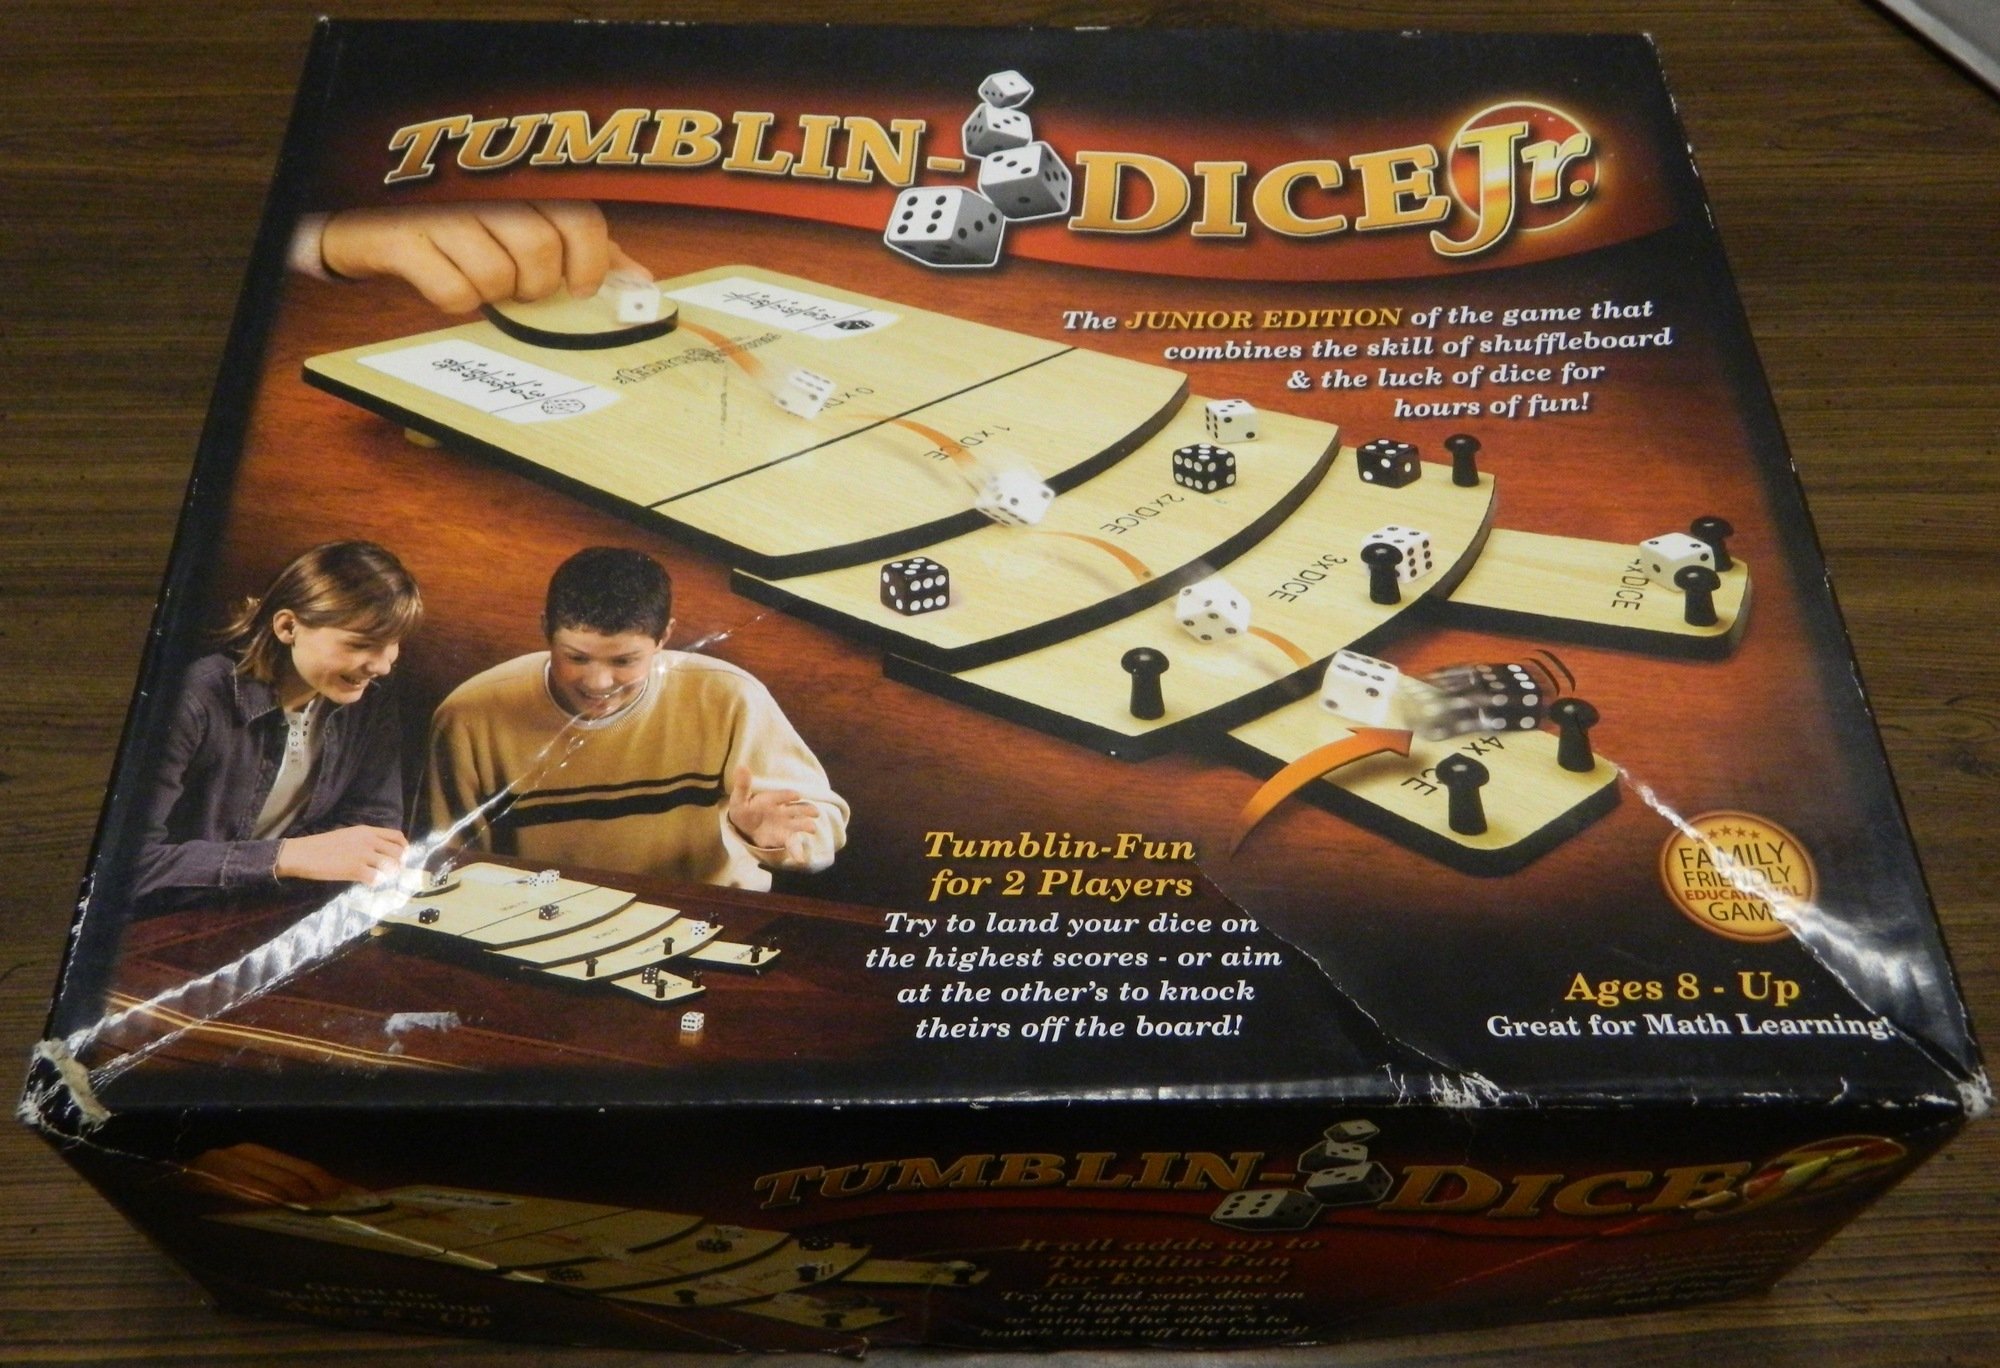 Box for Tumblin-Dice Jr